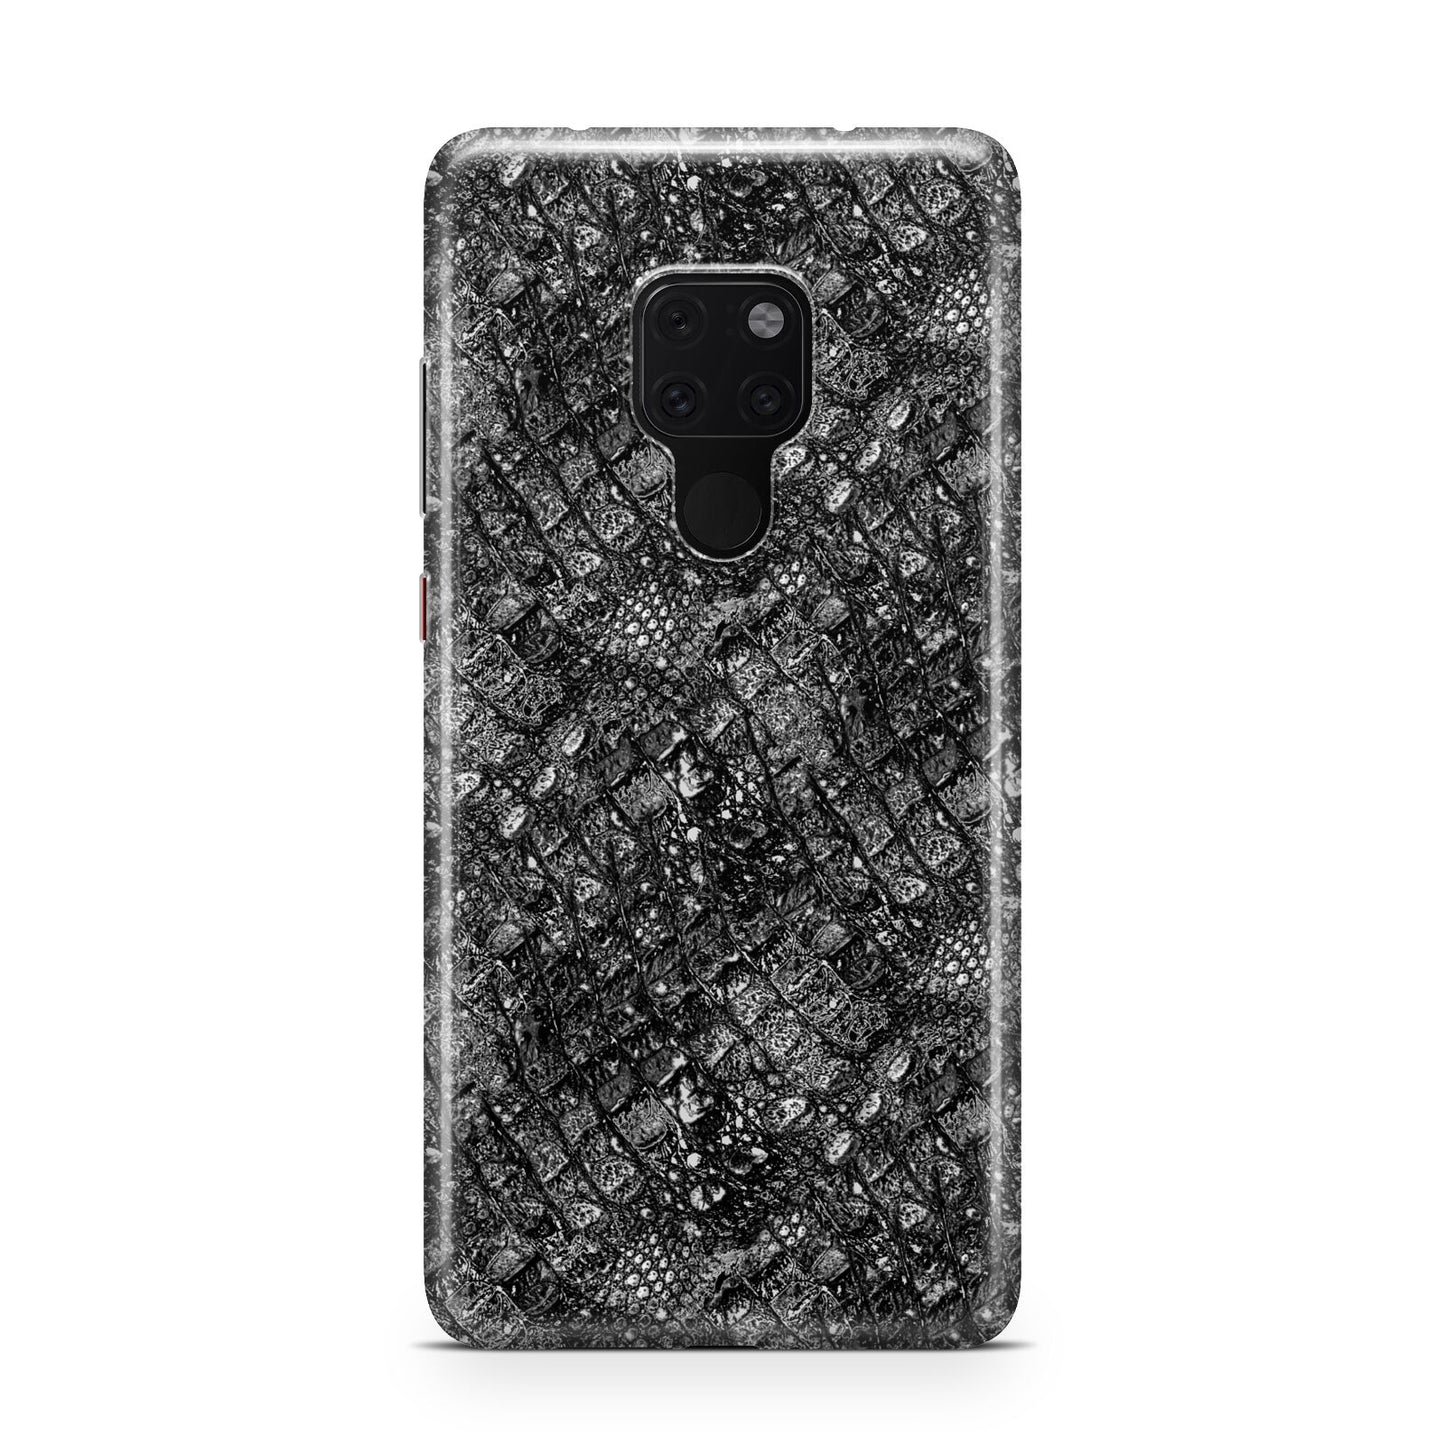 Snakeskin Design Huawei Mate 20 Phone Case